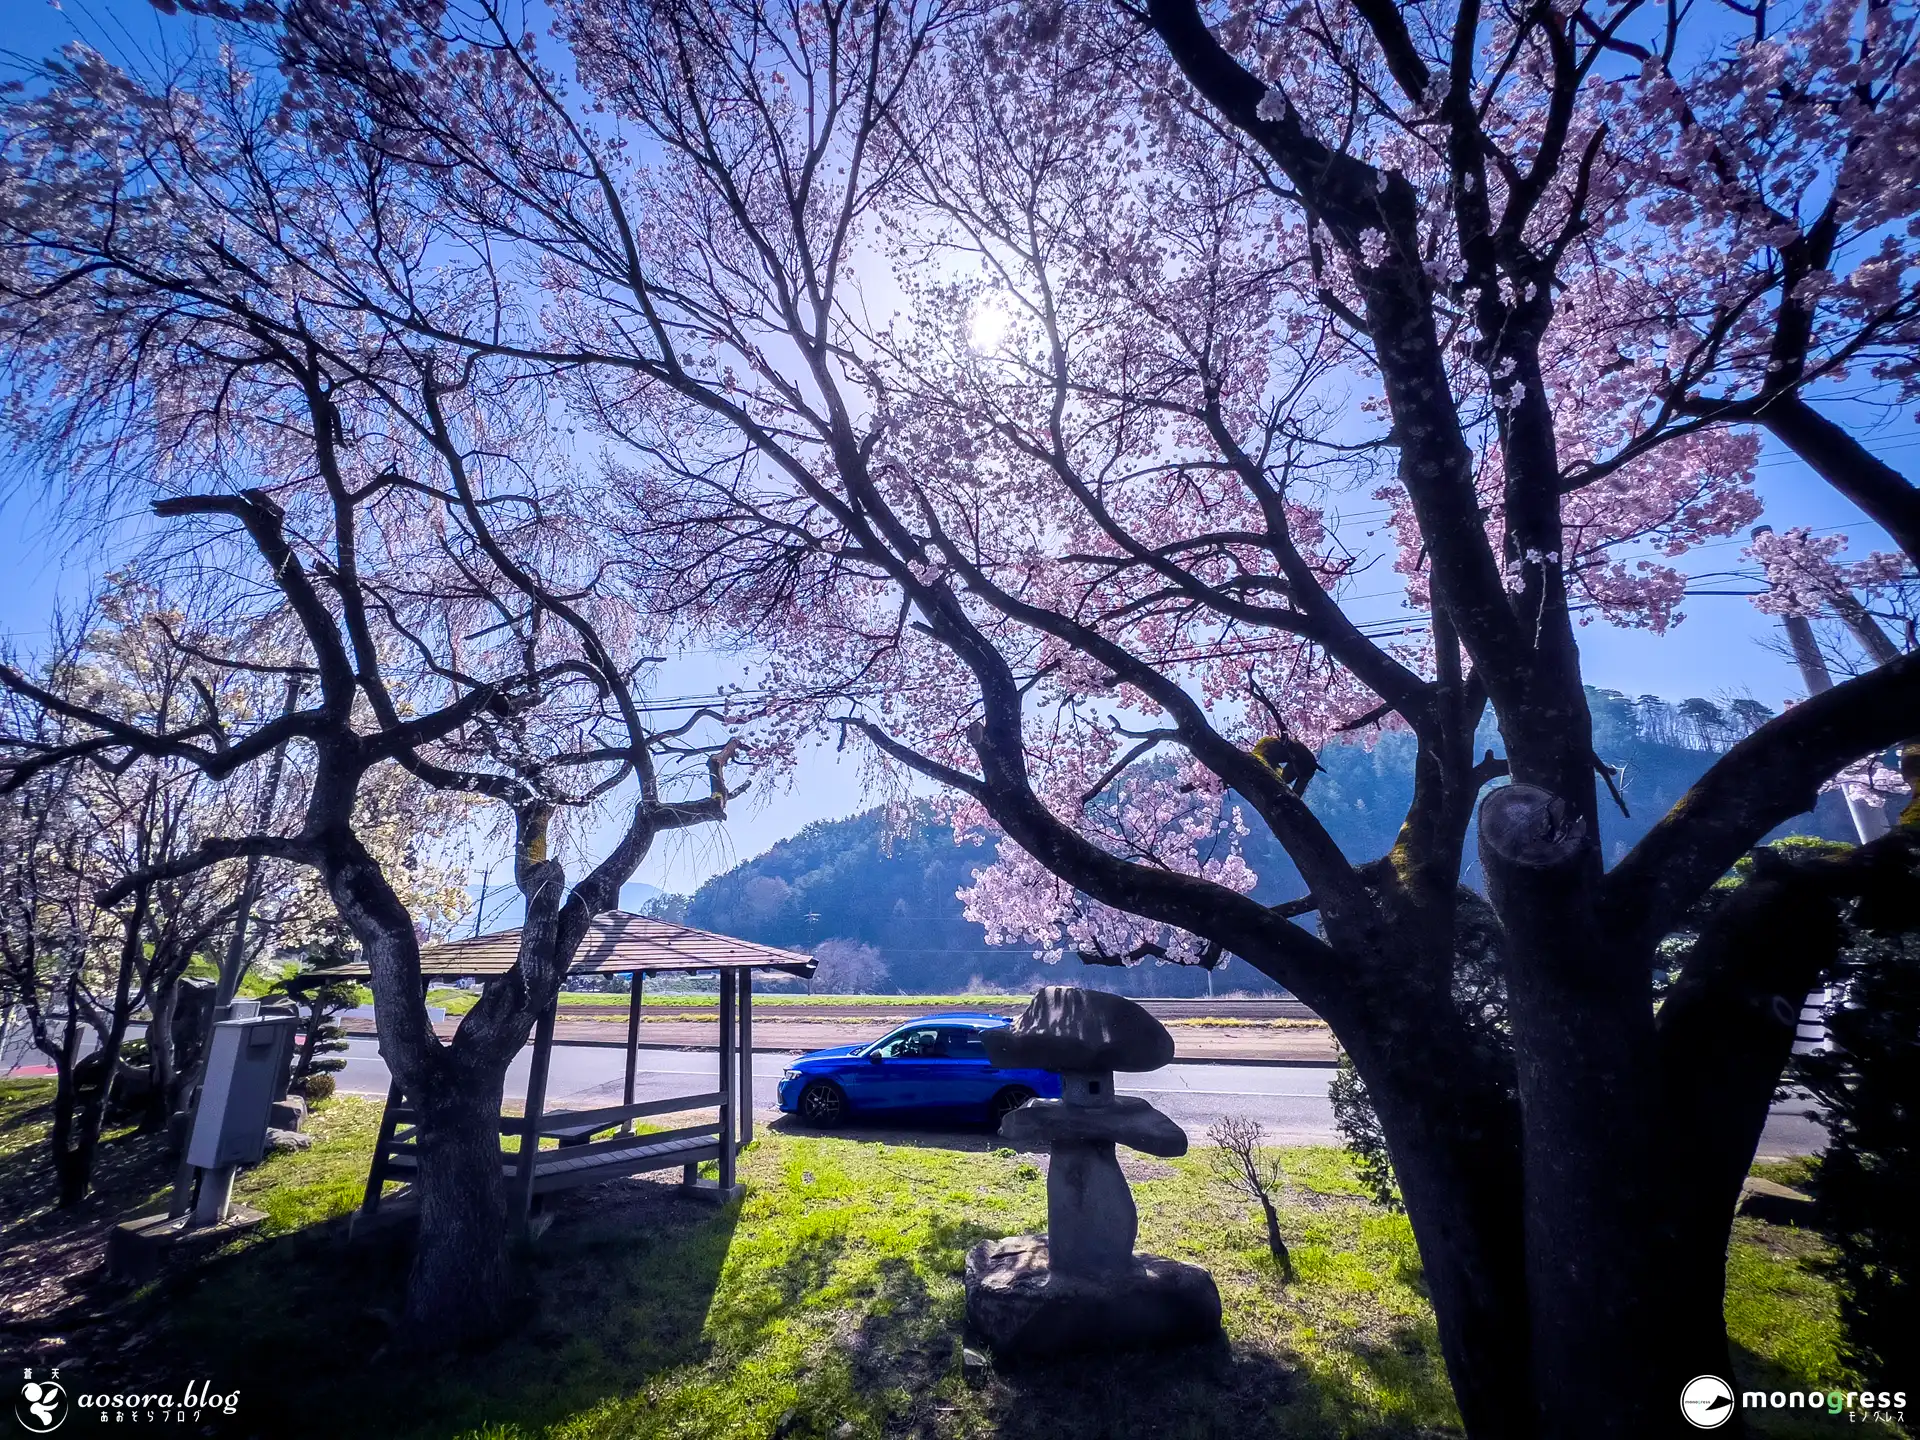 愛車 CIVIC e:HEV と桜の写真